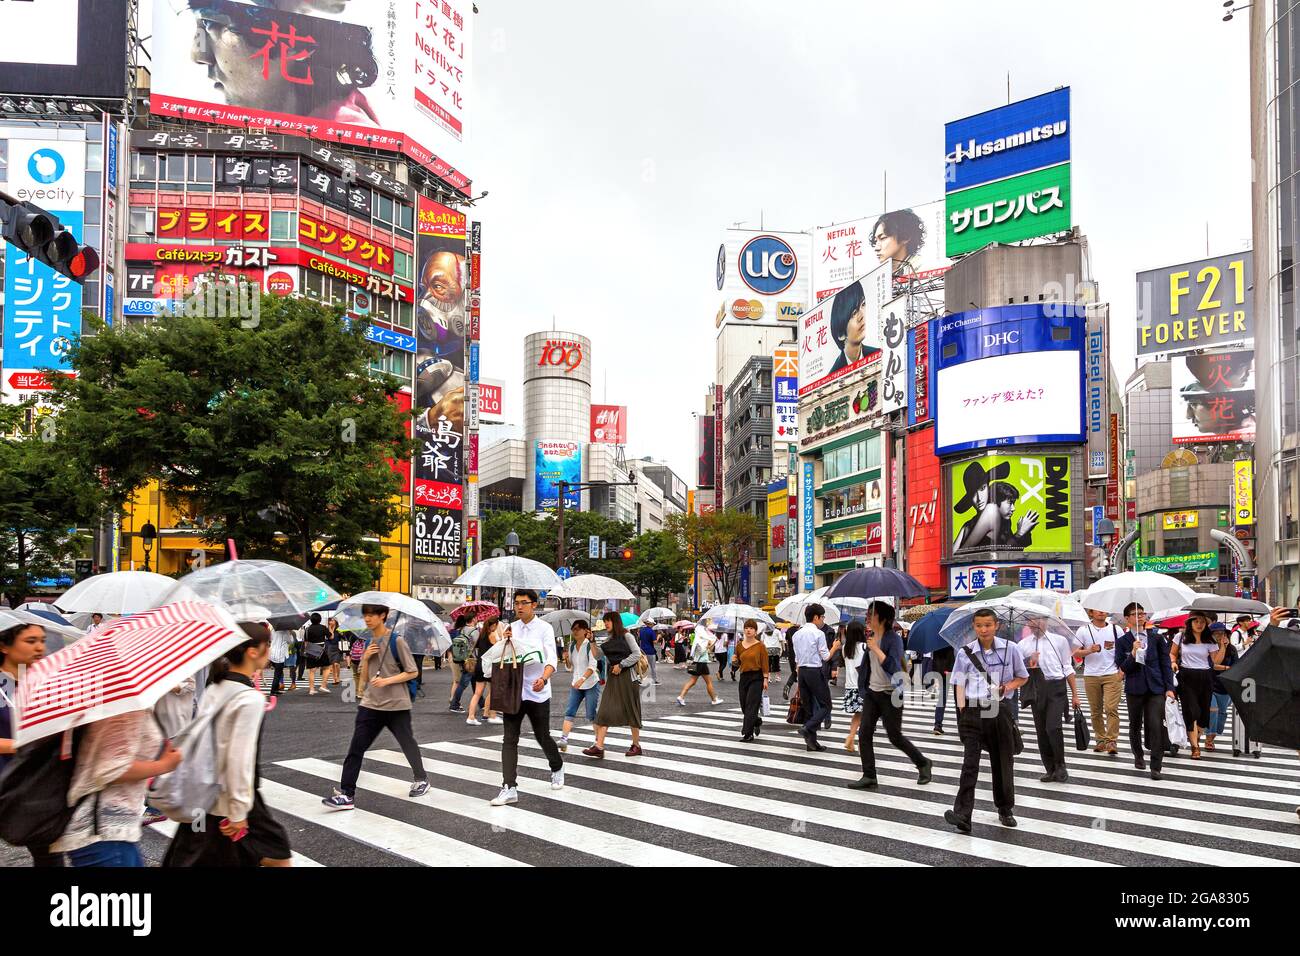 Tokio, Japan - 21. Juni 2016: Die geschäftigen Straßen von Tokio an einem  regnerischen Tag. Viele Menschen, die Regenschirme halten, überqueren die  geschäftige Kreuzung Shibuya Crossing Stockfotografie - Alamy